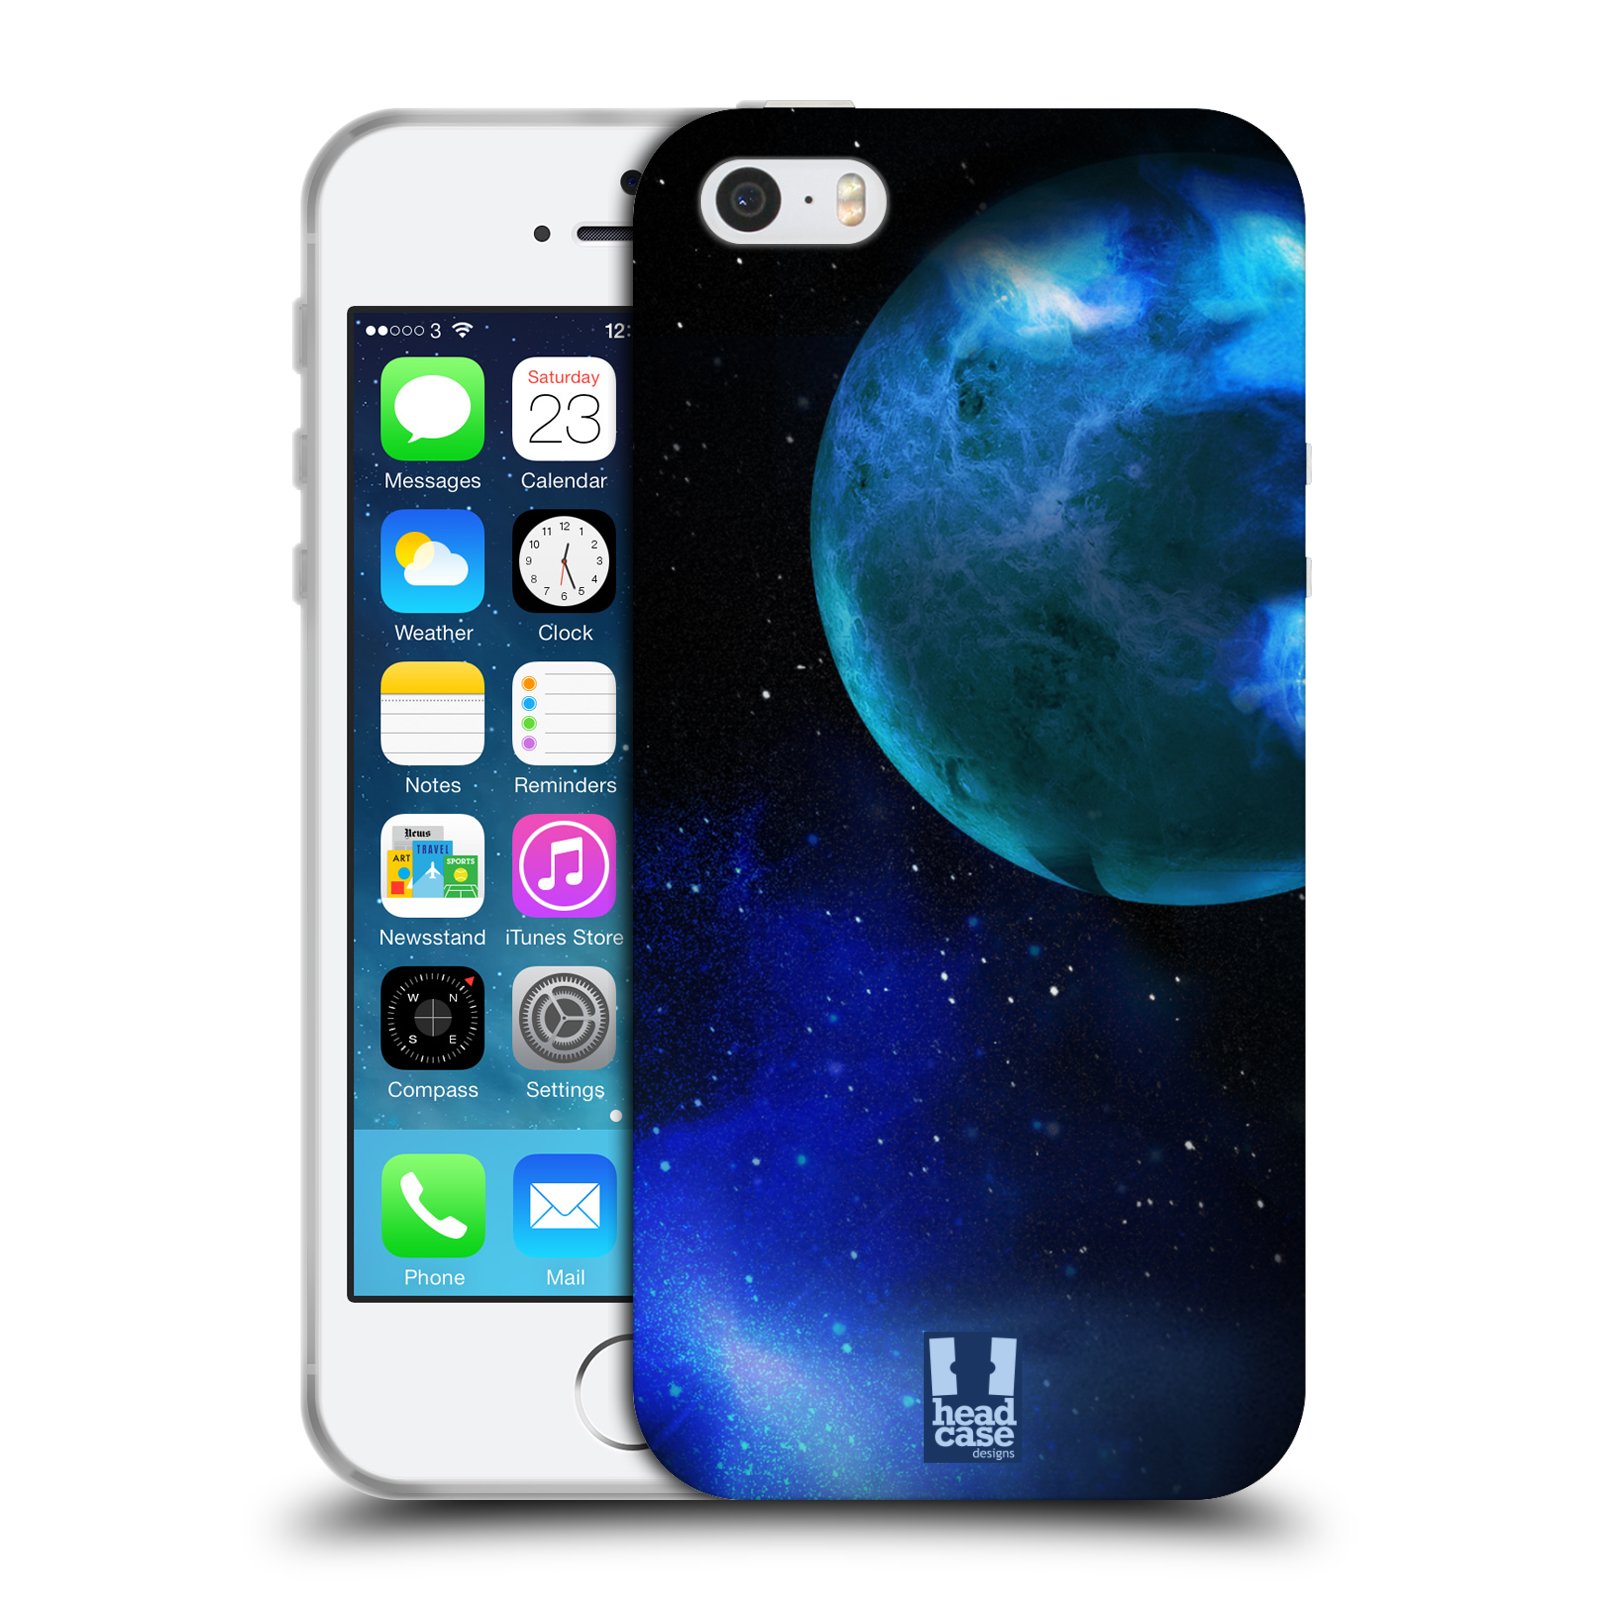 Silikonové pouzdro na mobil Apple iPhone 5, 5S, SE - Head Case - VENUŠE (Silikonový kryt, obal, pouzdro na mobilní telefon Apple iPhone SE, 5S a 5 s motivem VENUŠE)